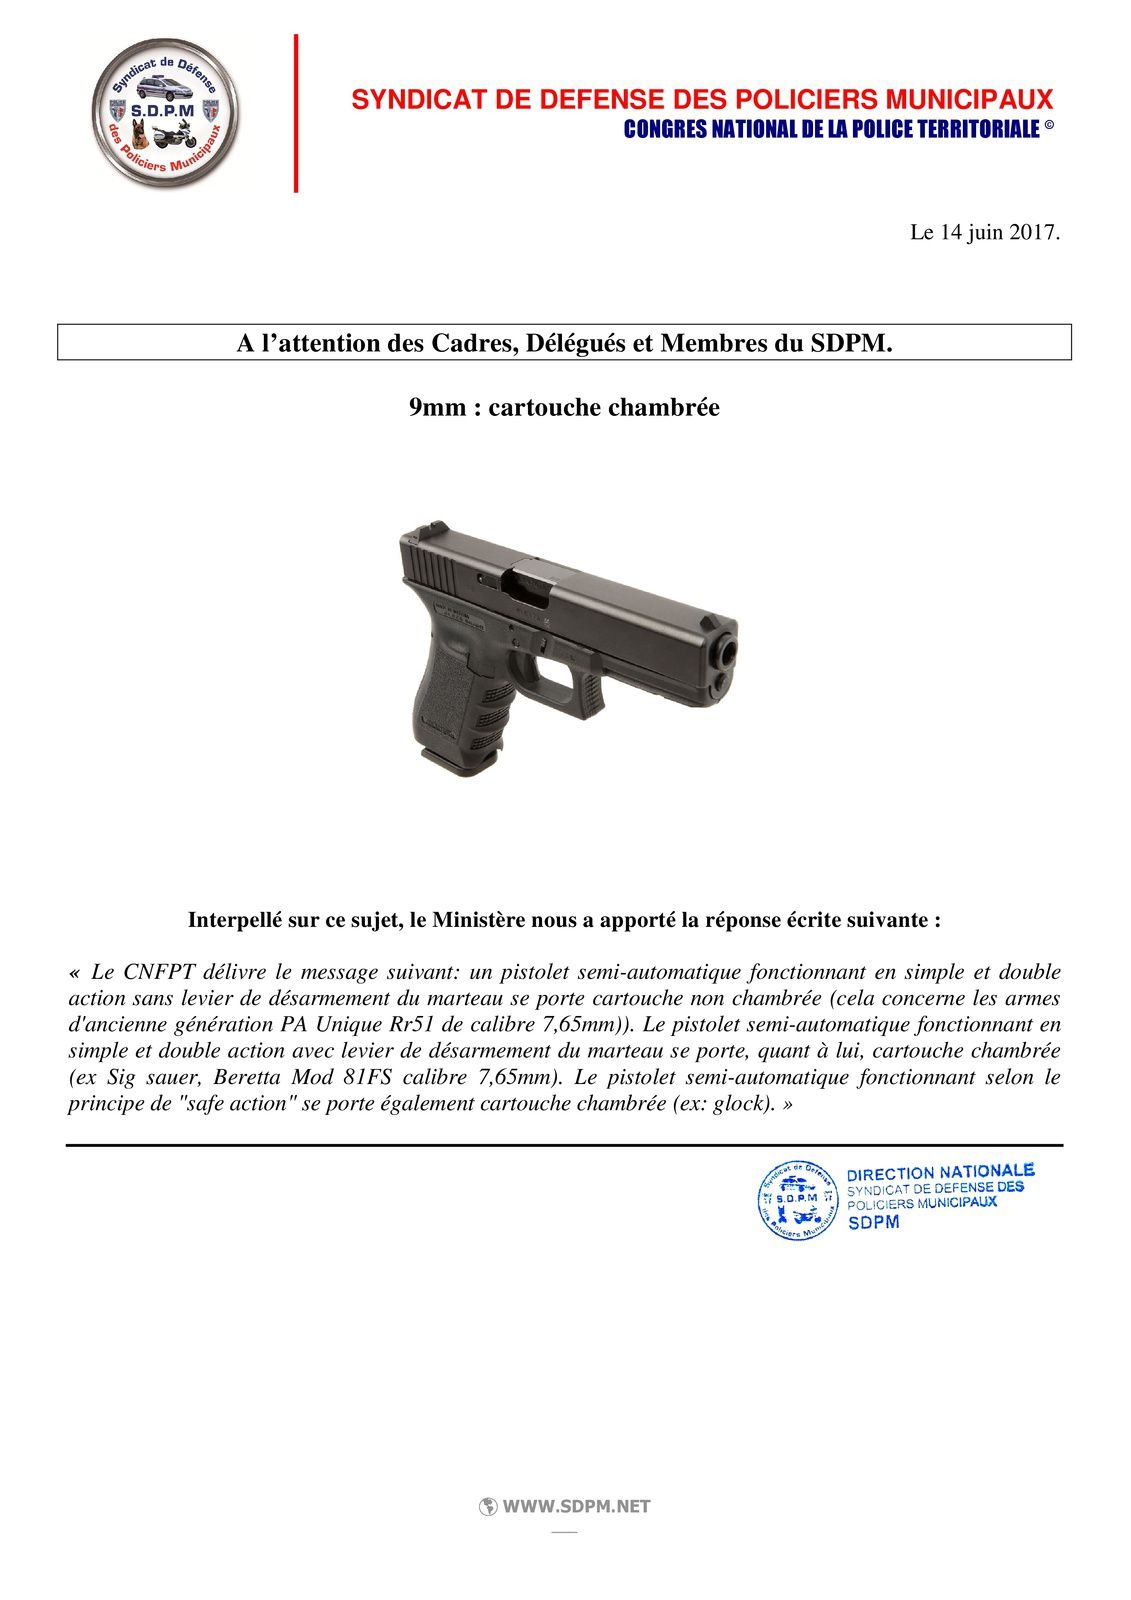 Pistolet 9 mm : cartouche chambrée ou non ? le SDPM répond